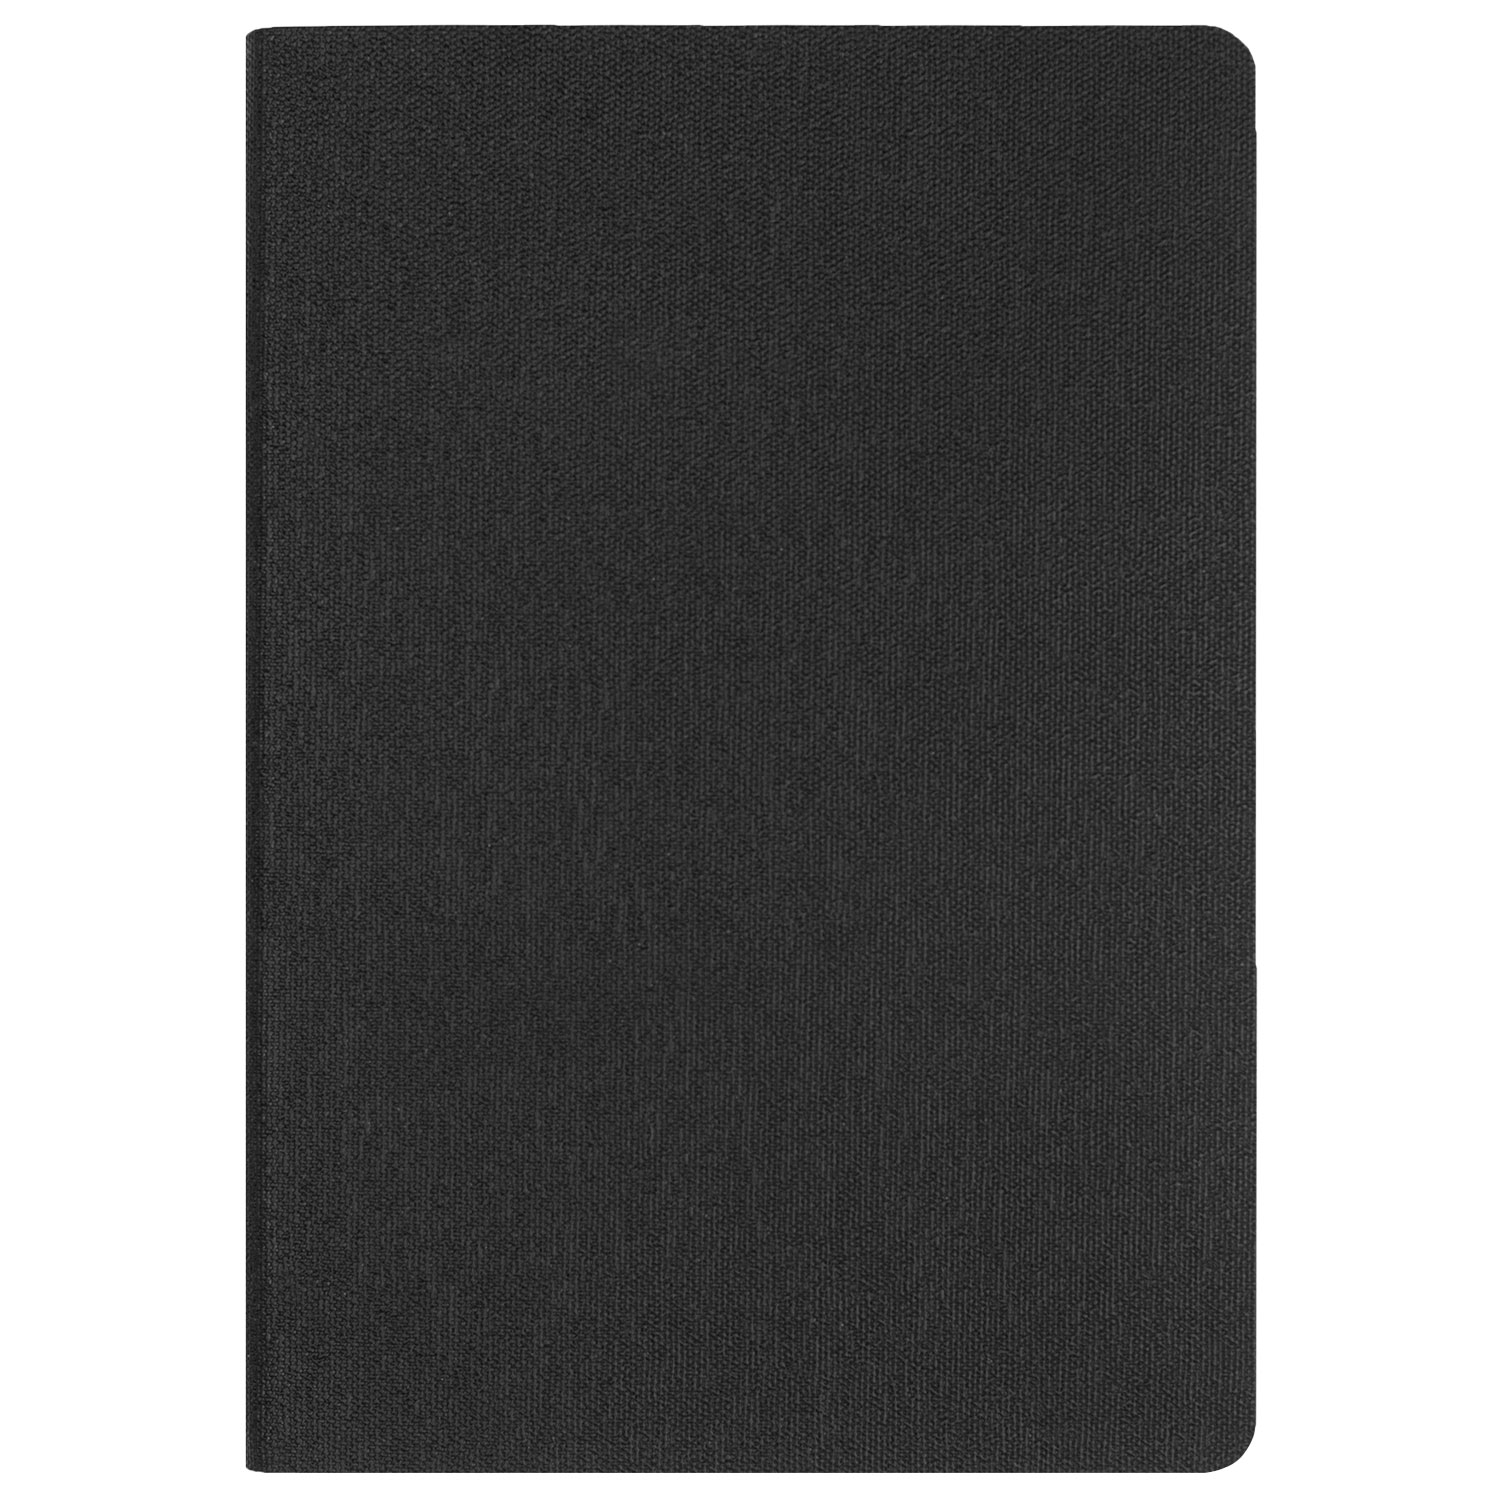 Ежедневник Tweed недатированный, черный, черный